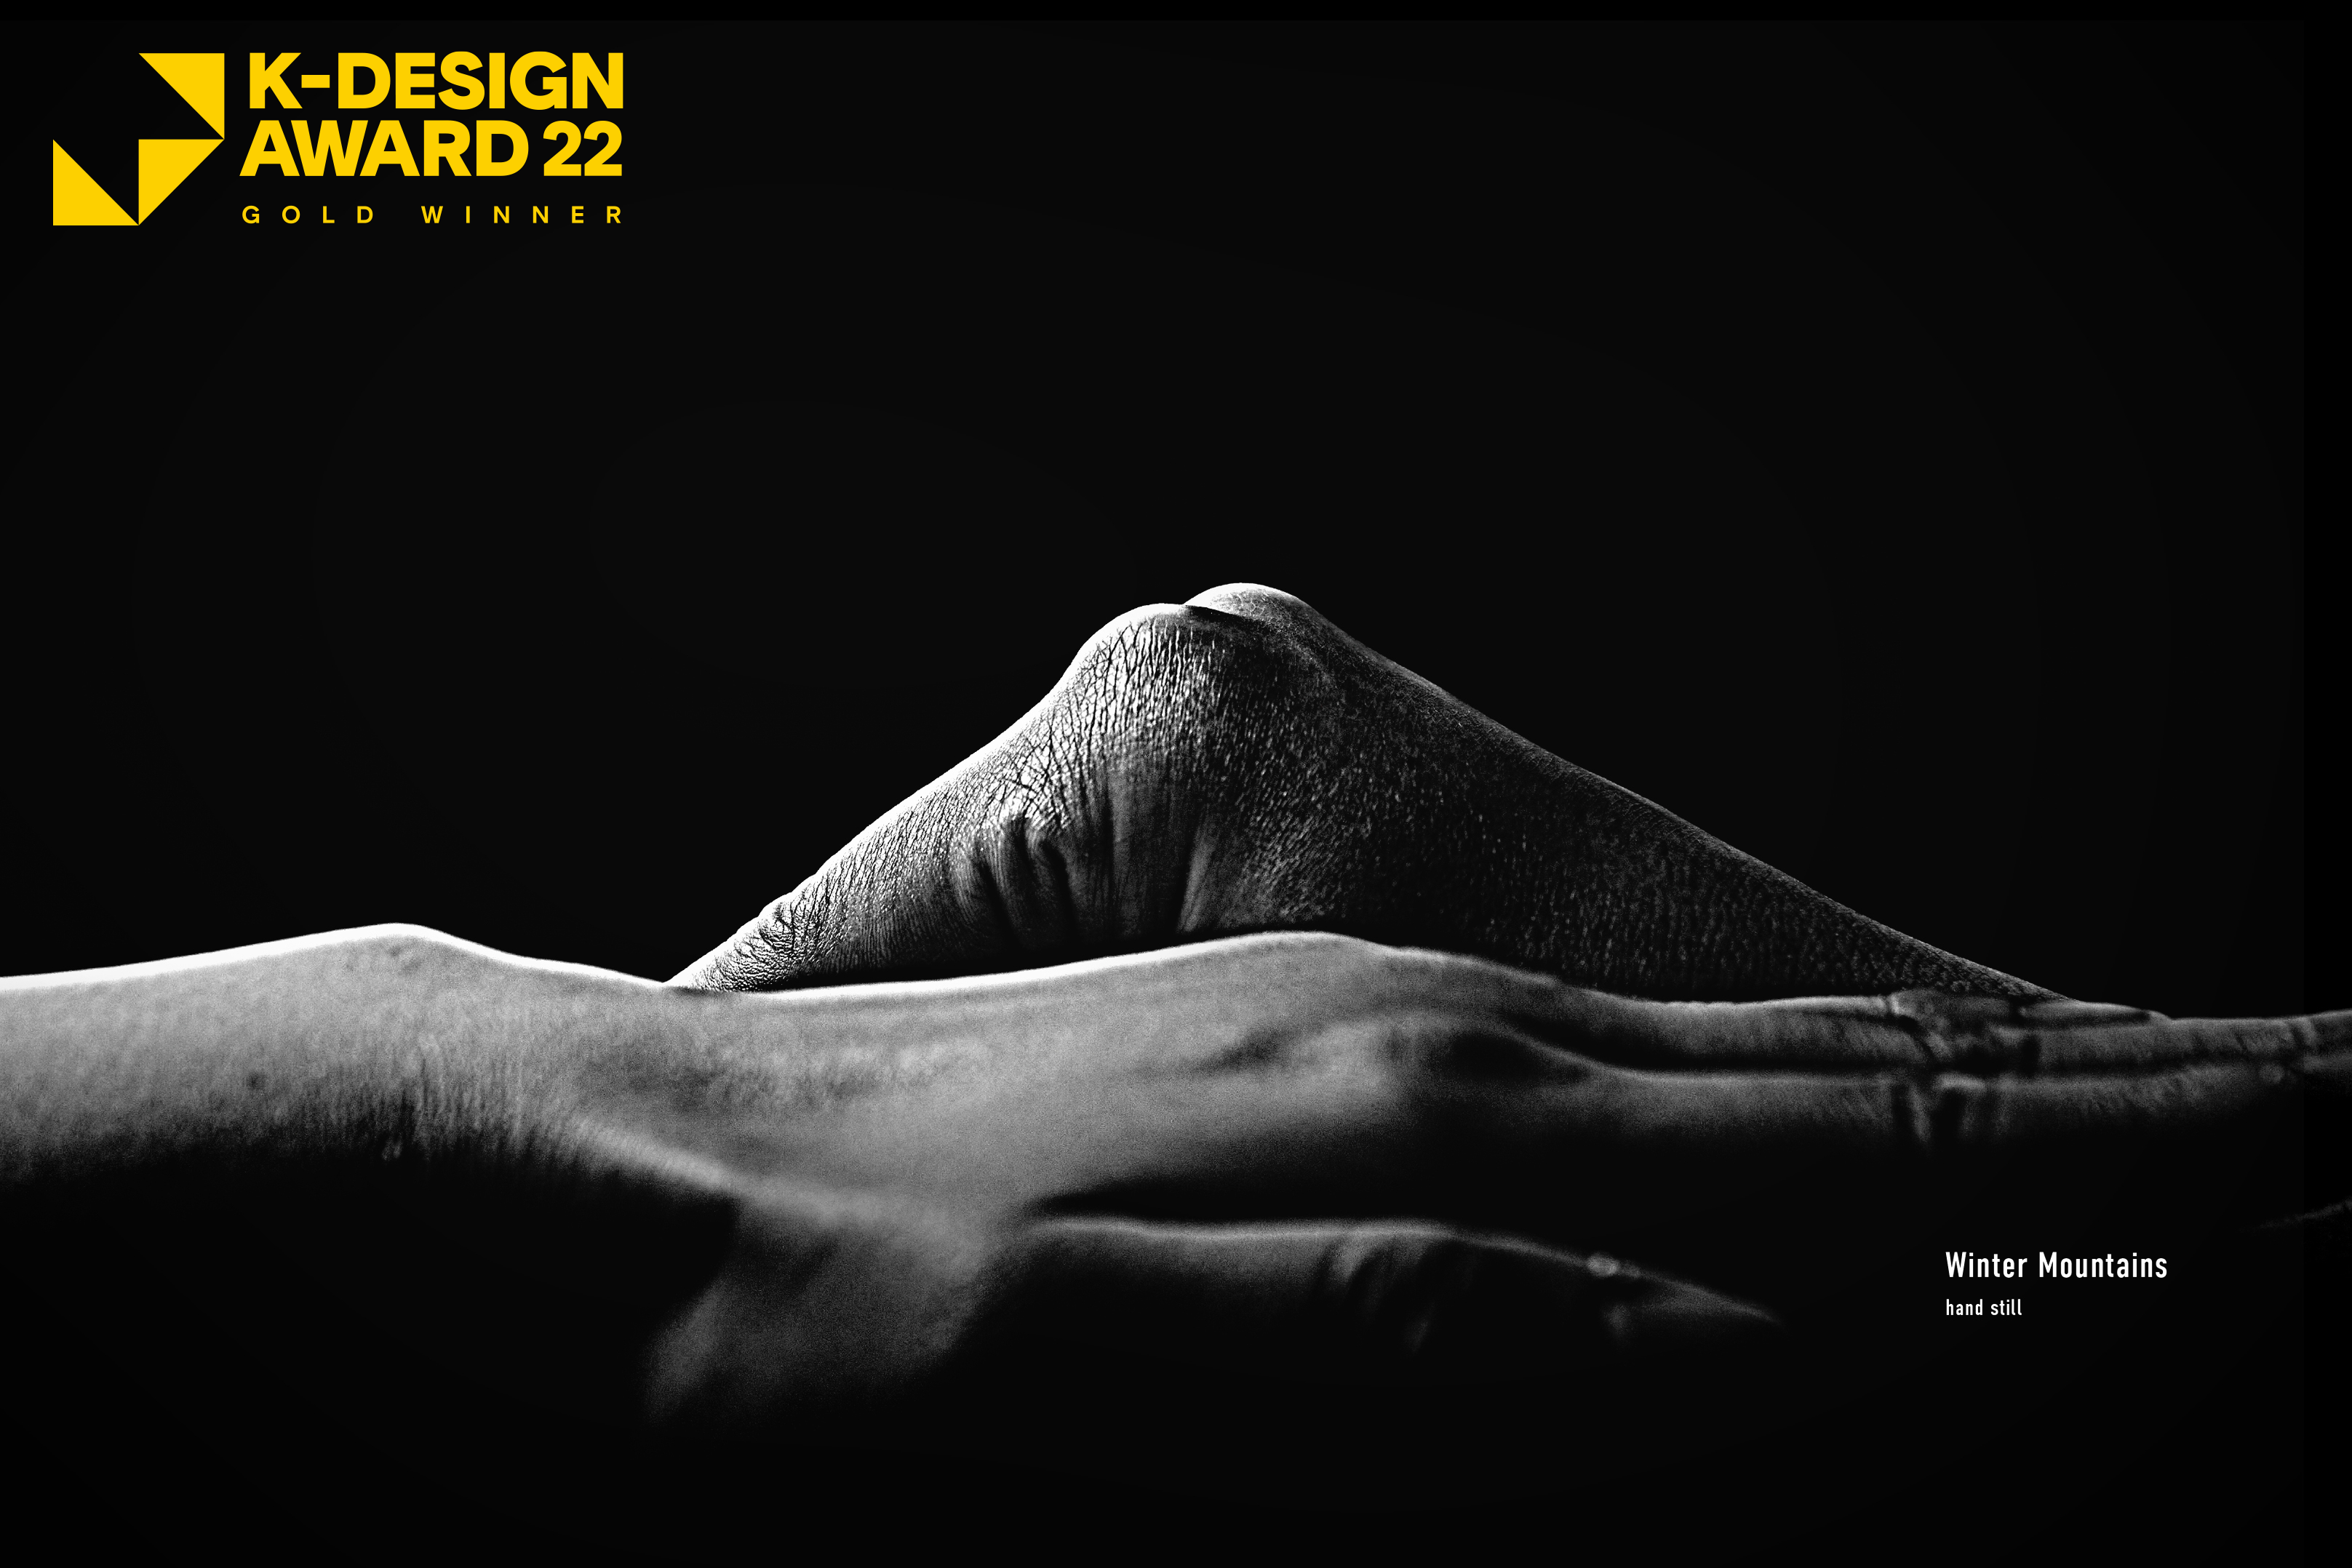 デザインコンペでの受賞歴を多数持つ当社。直近ではクリエイティブディレクター藤井賢二による参加型アート「Hand Still」が韓国のデザイン団体が主催する国際コンペティションK-DESIGN AWARDのGOLD WINNERを受賞しました。